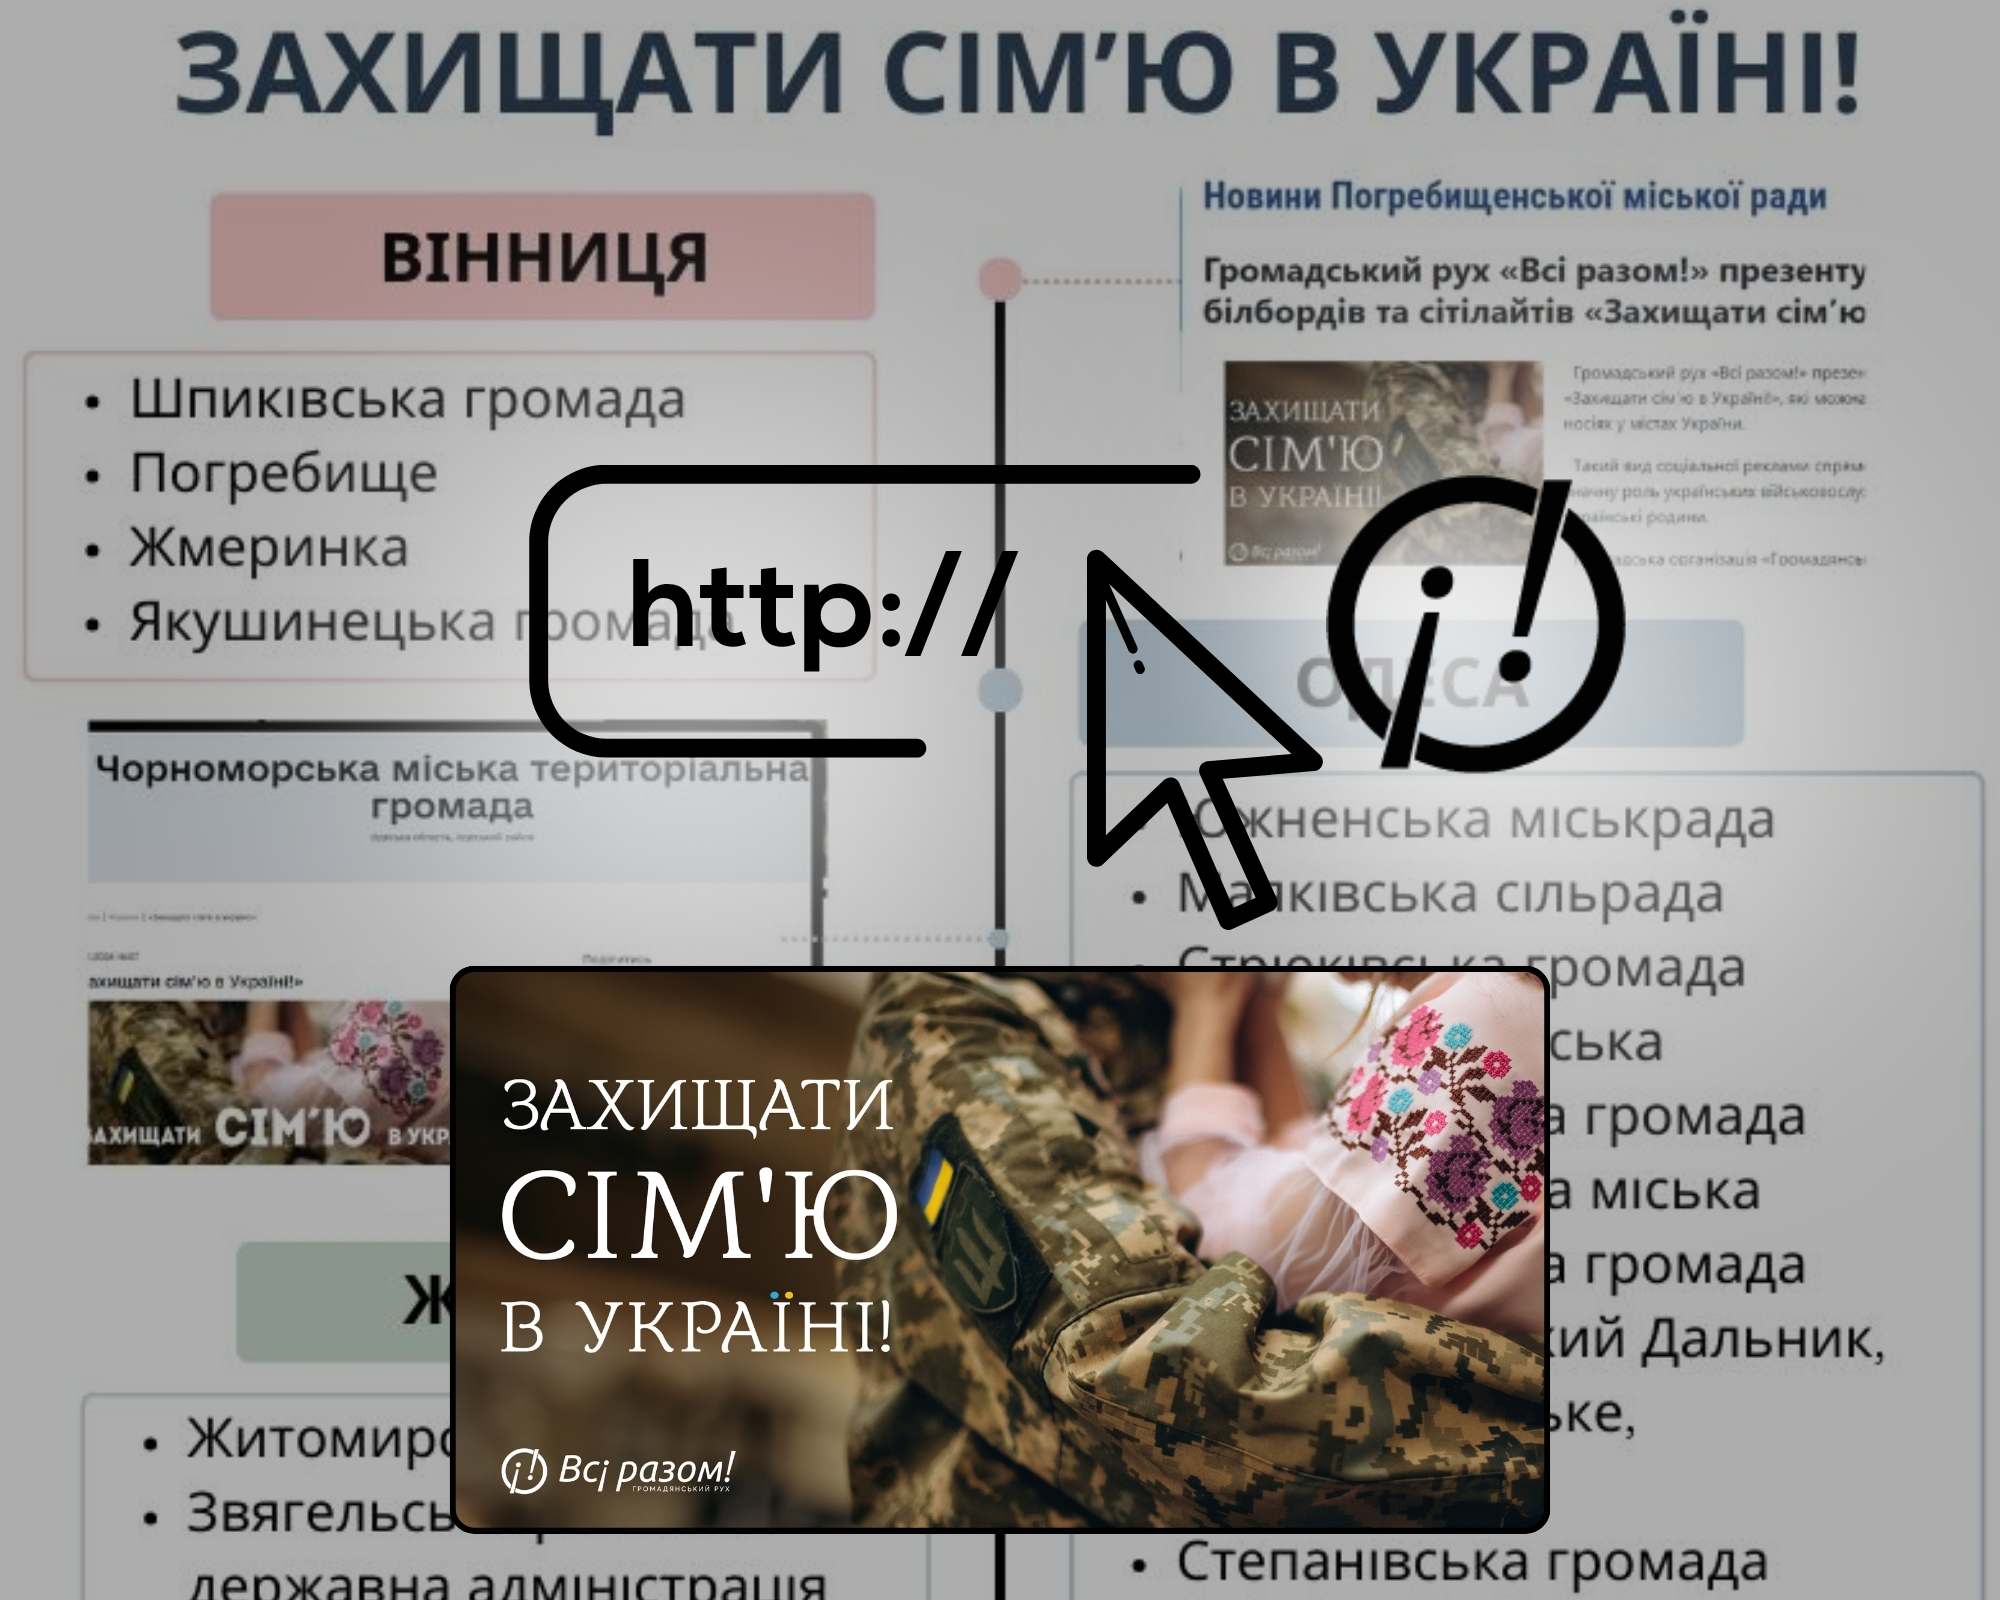 10 областей України підтримали інформаційну кампанію “Захищати сім’ю в Україні” у мережі інтернет